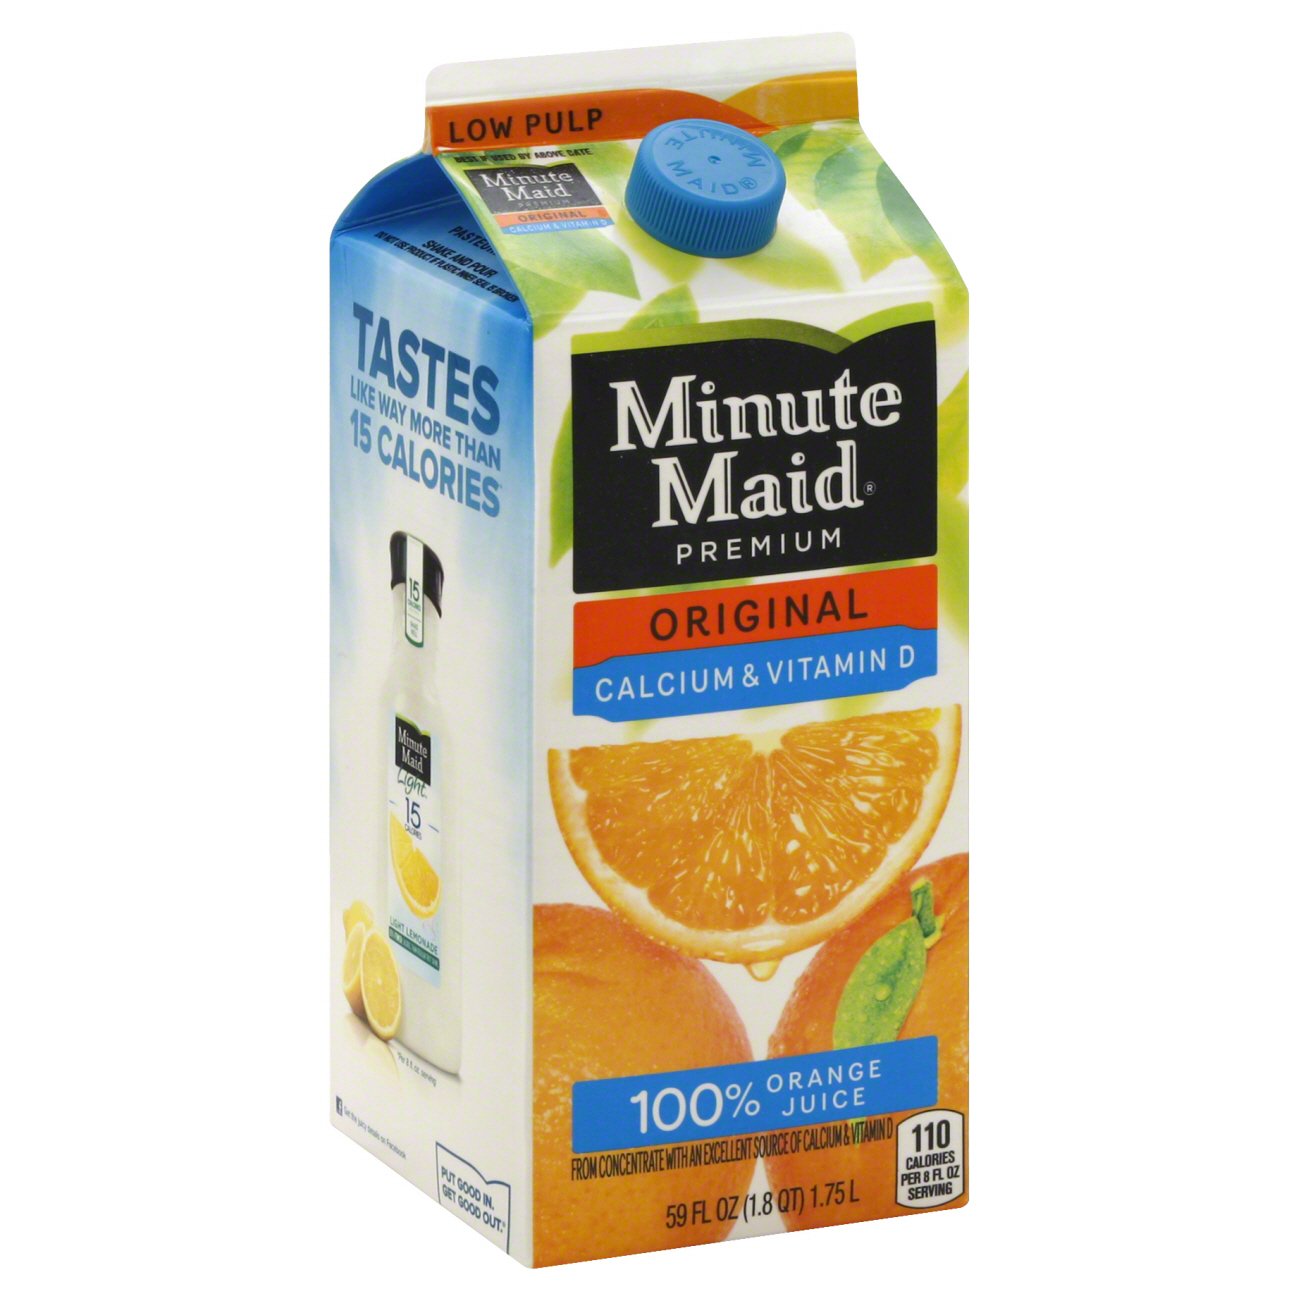 Minute Maid Premium Original Calcium & Vitamin D Low Pulp ...